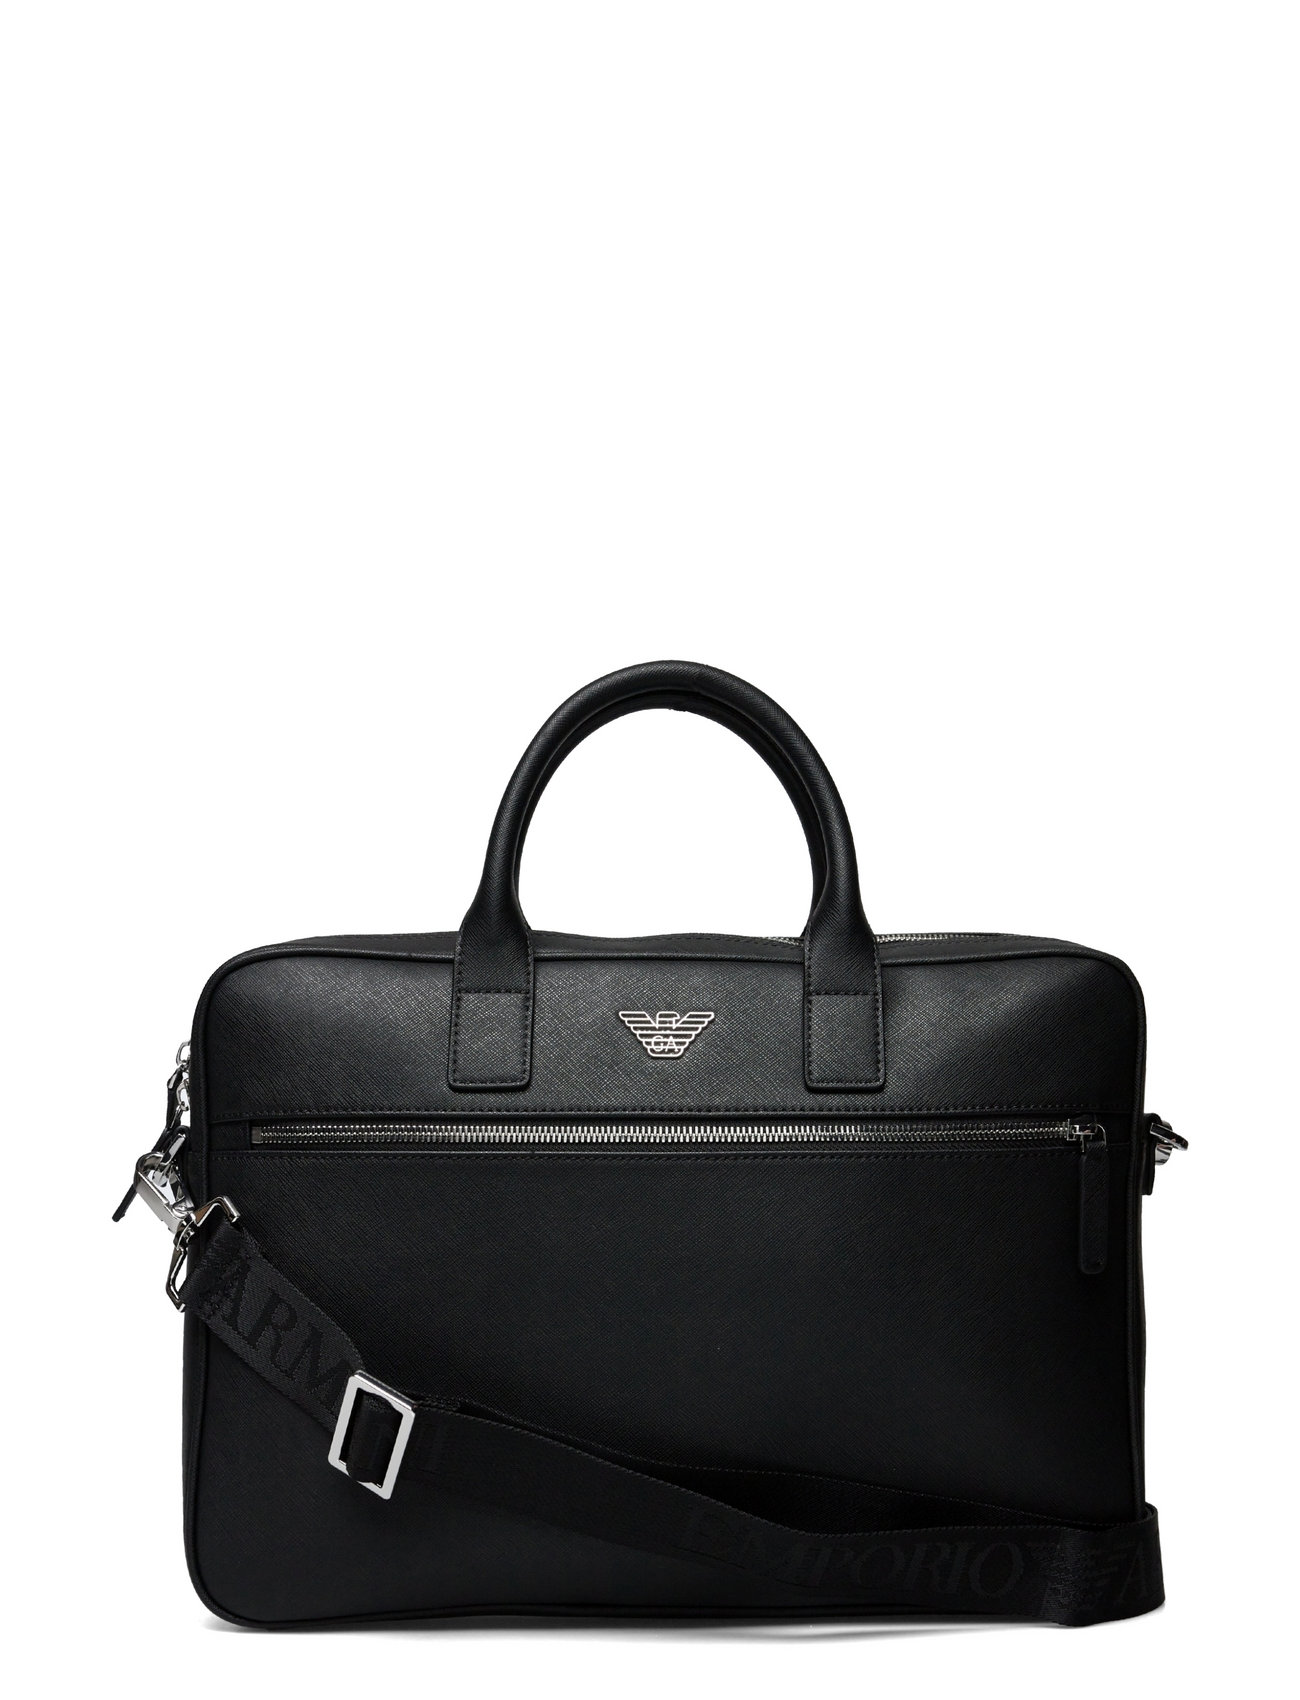 Briefcase Bag Designers Computer Bags Black Emporio Armani